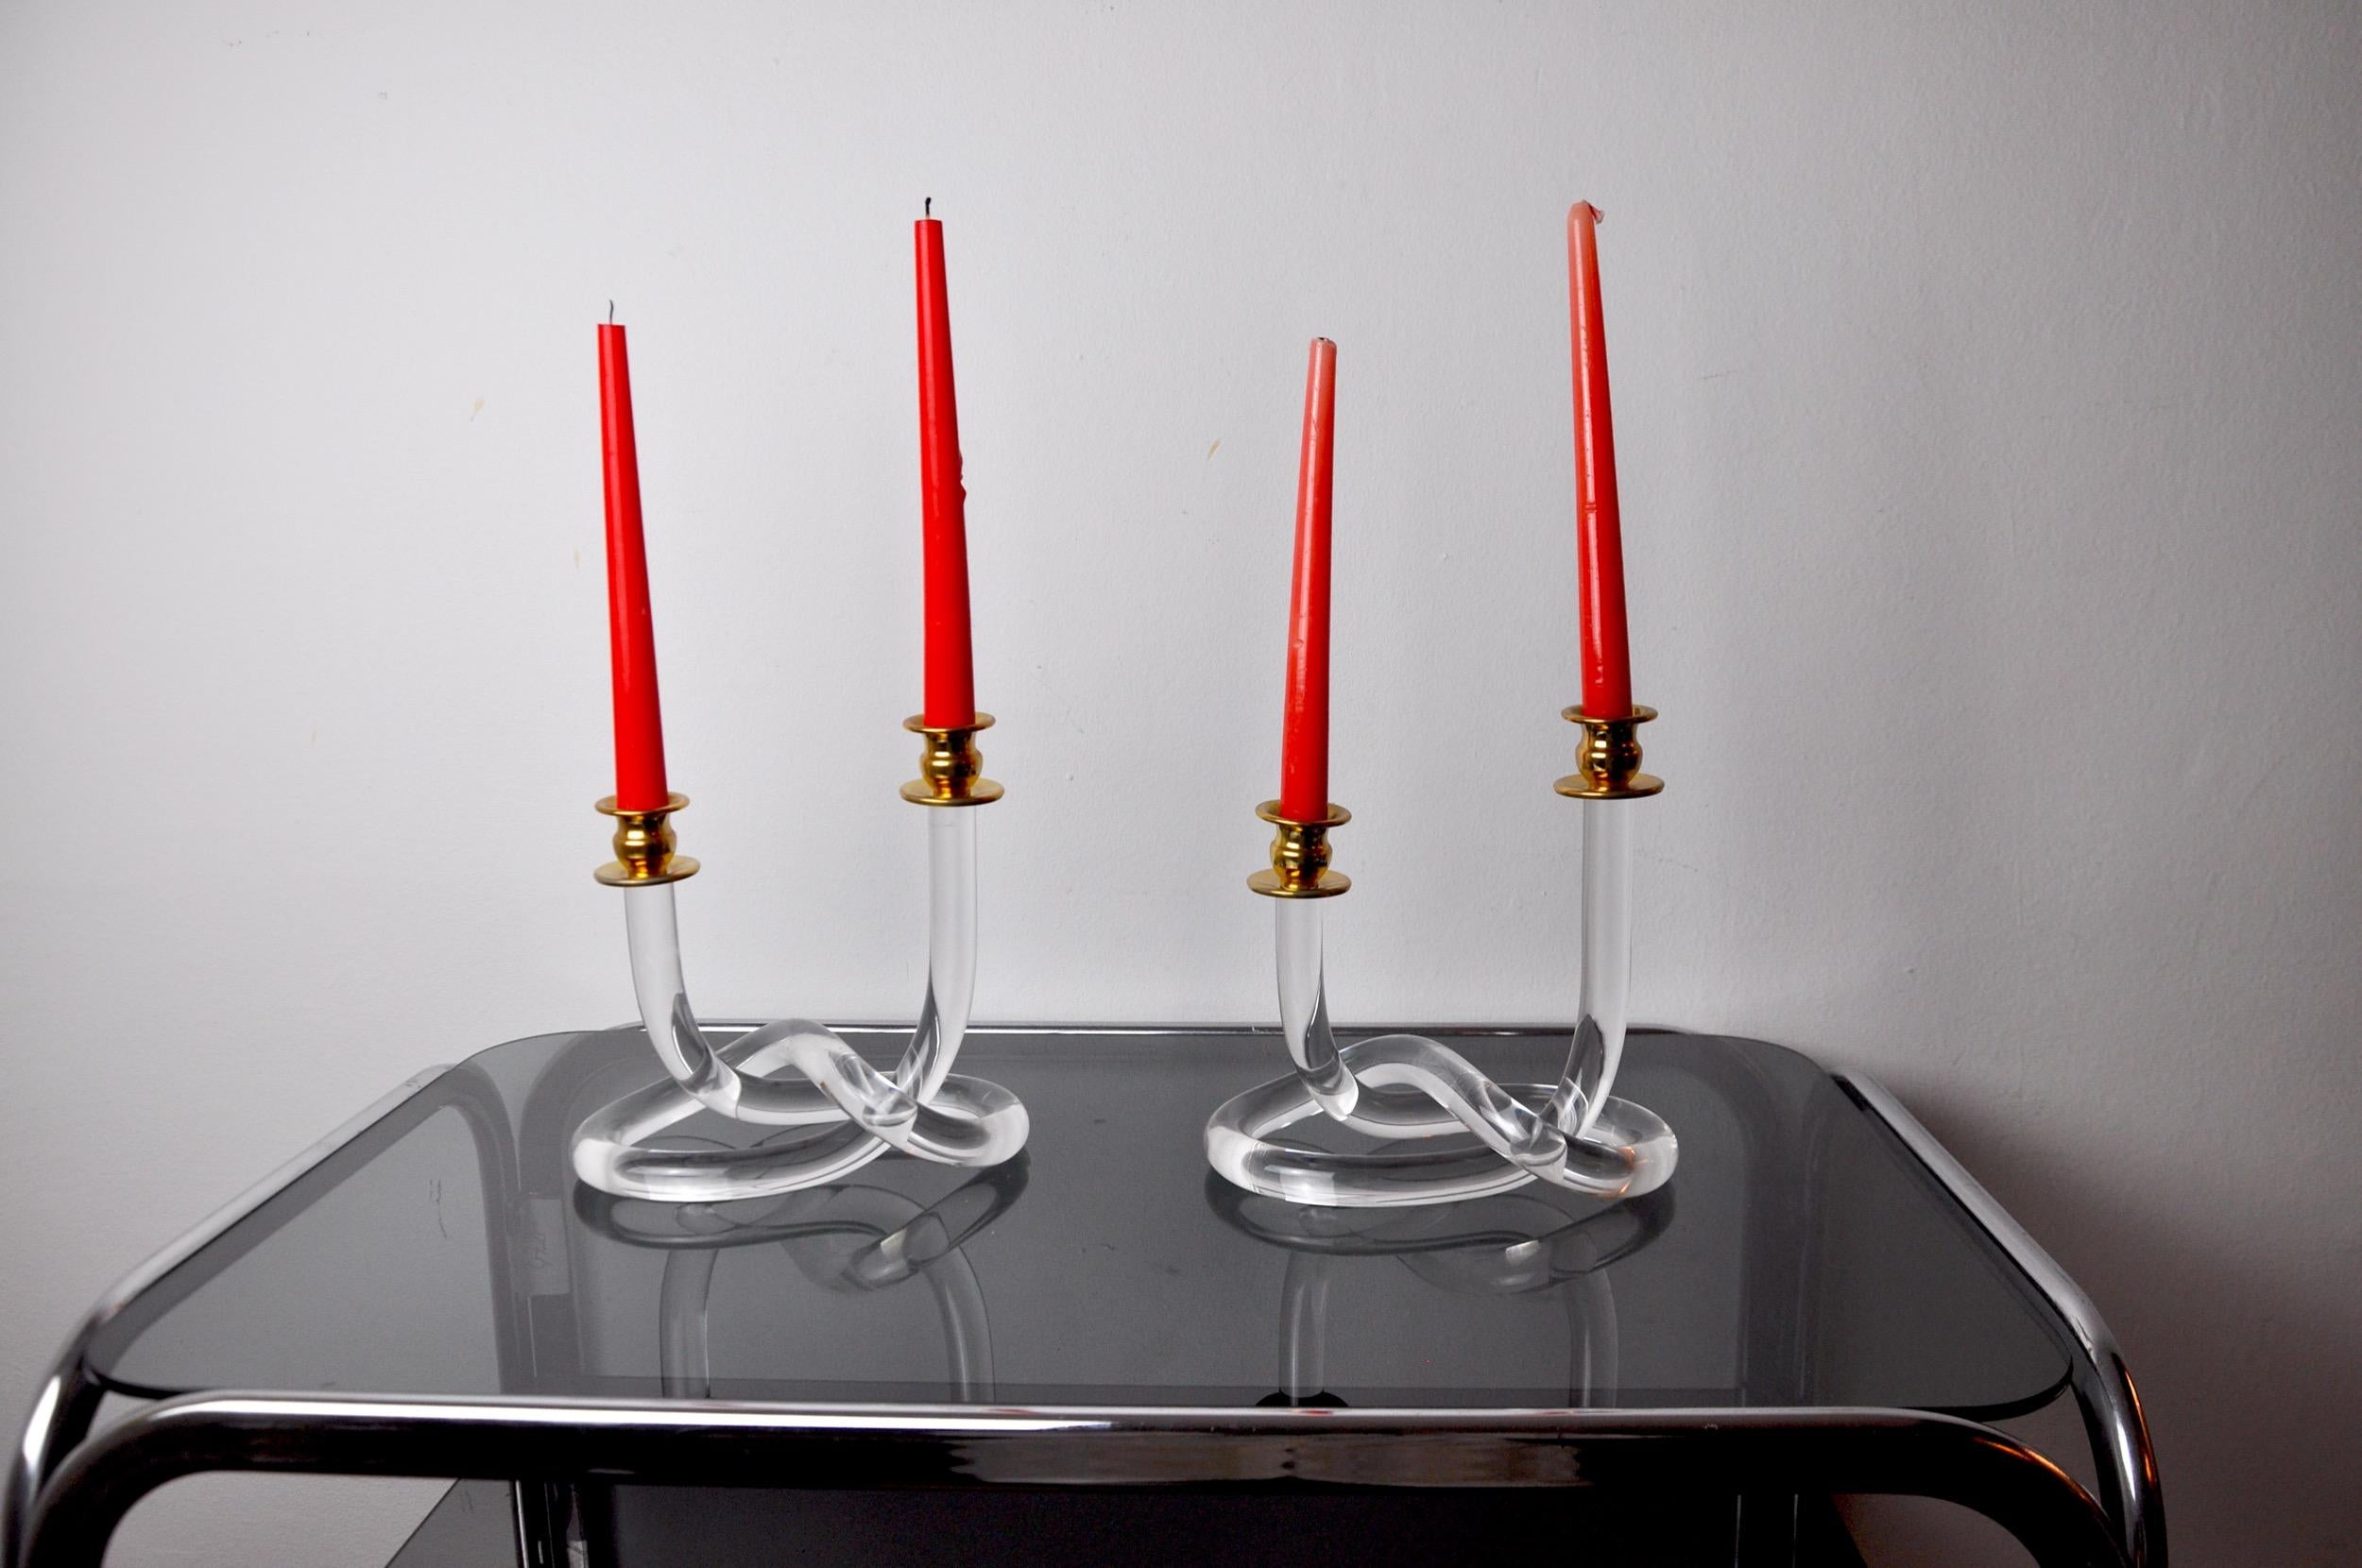 Ein Paar Dorothy Thorpe-Kerzenständer aus Lucit, entworfen und hergestellt in den 1970er Jahren.

Goldener Metallträger und Lucite in Form einer Brezel, entworfen von Elaine Bscheider.

Wunderschöne Dekorationsobjekte, die Ihrem Interieur einen